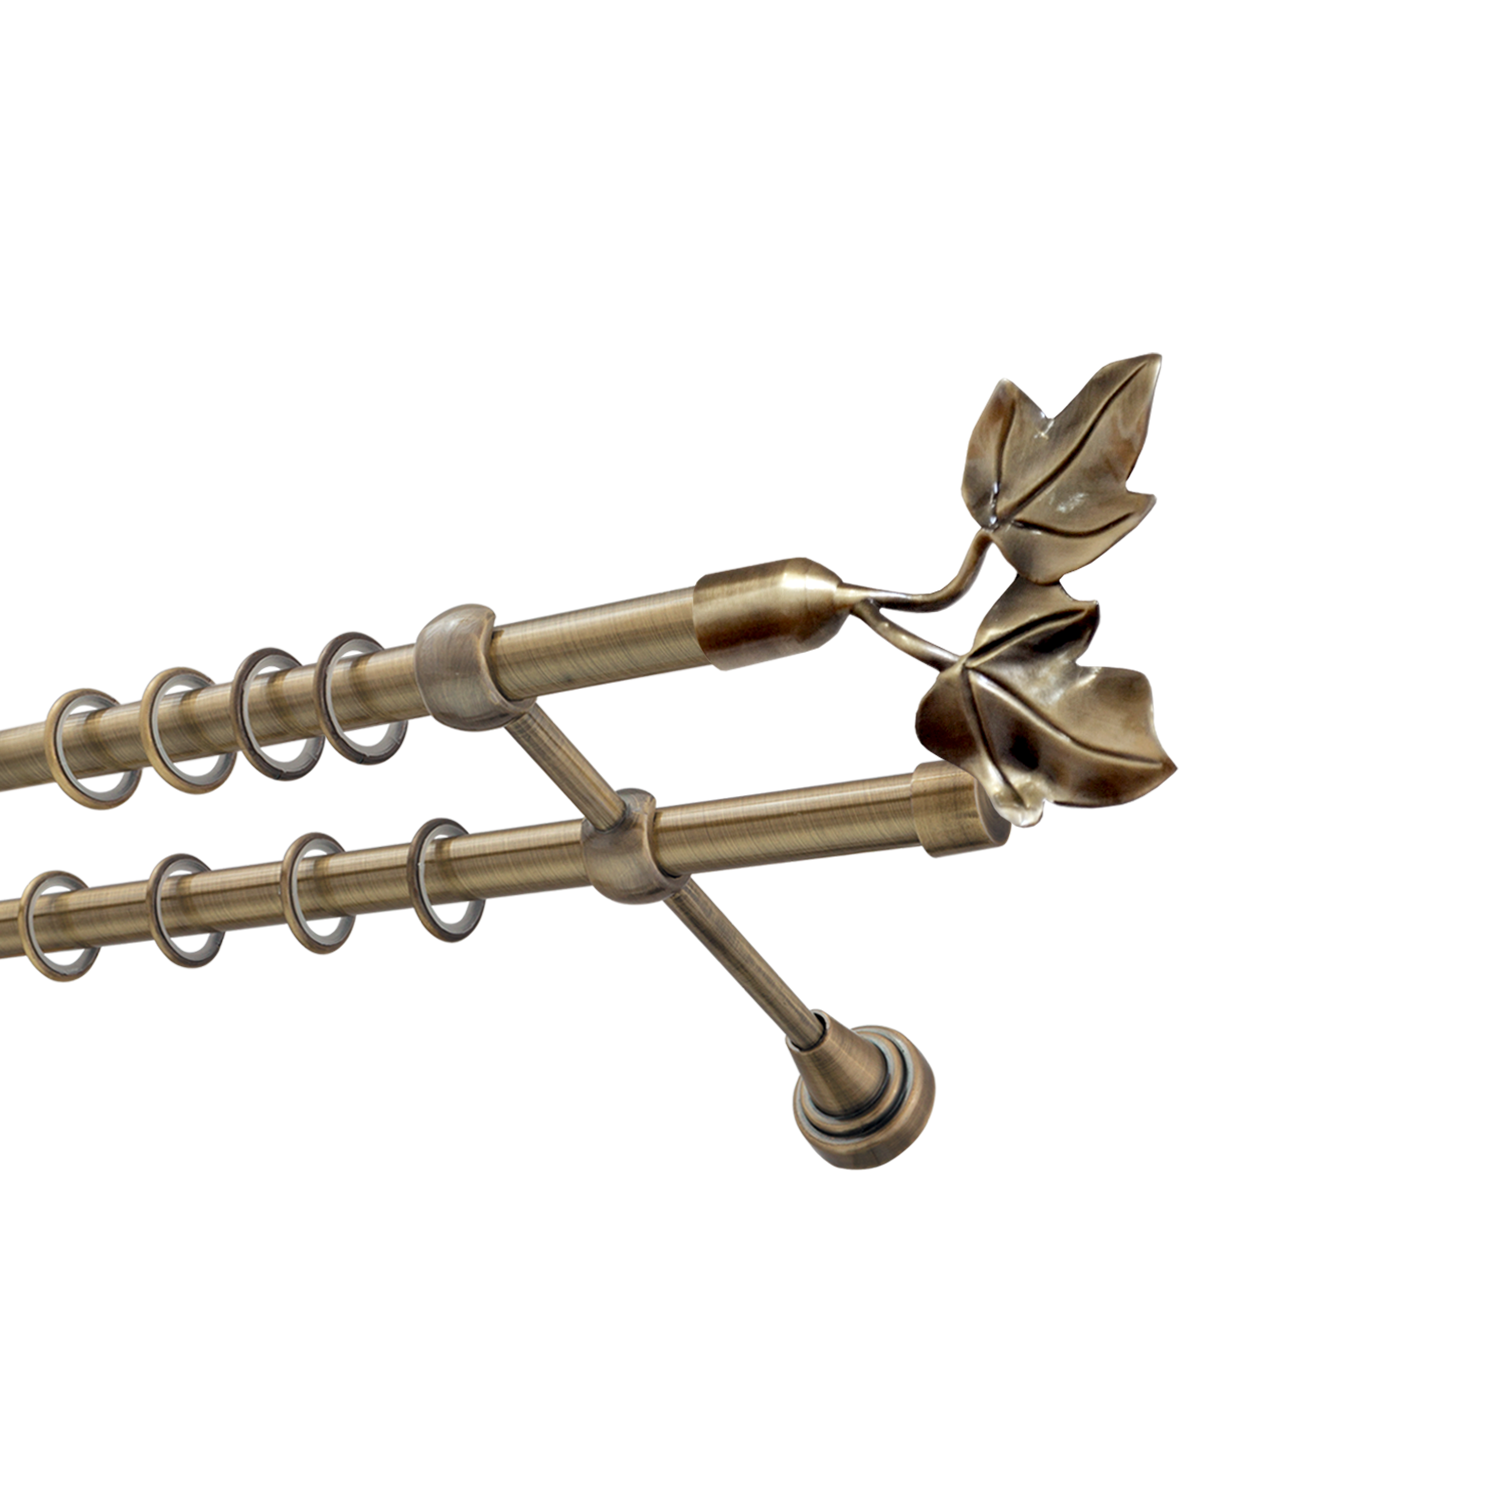 Металлический карниз для штор Листья, двухрядный 16/16 мм, бронза, гладкая штанга, длина 160 см - фото Wikidecor.ru